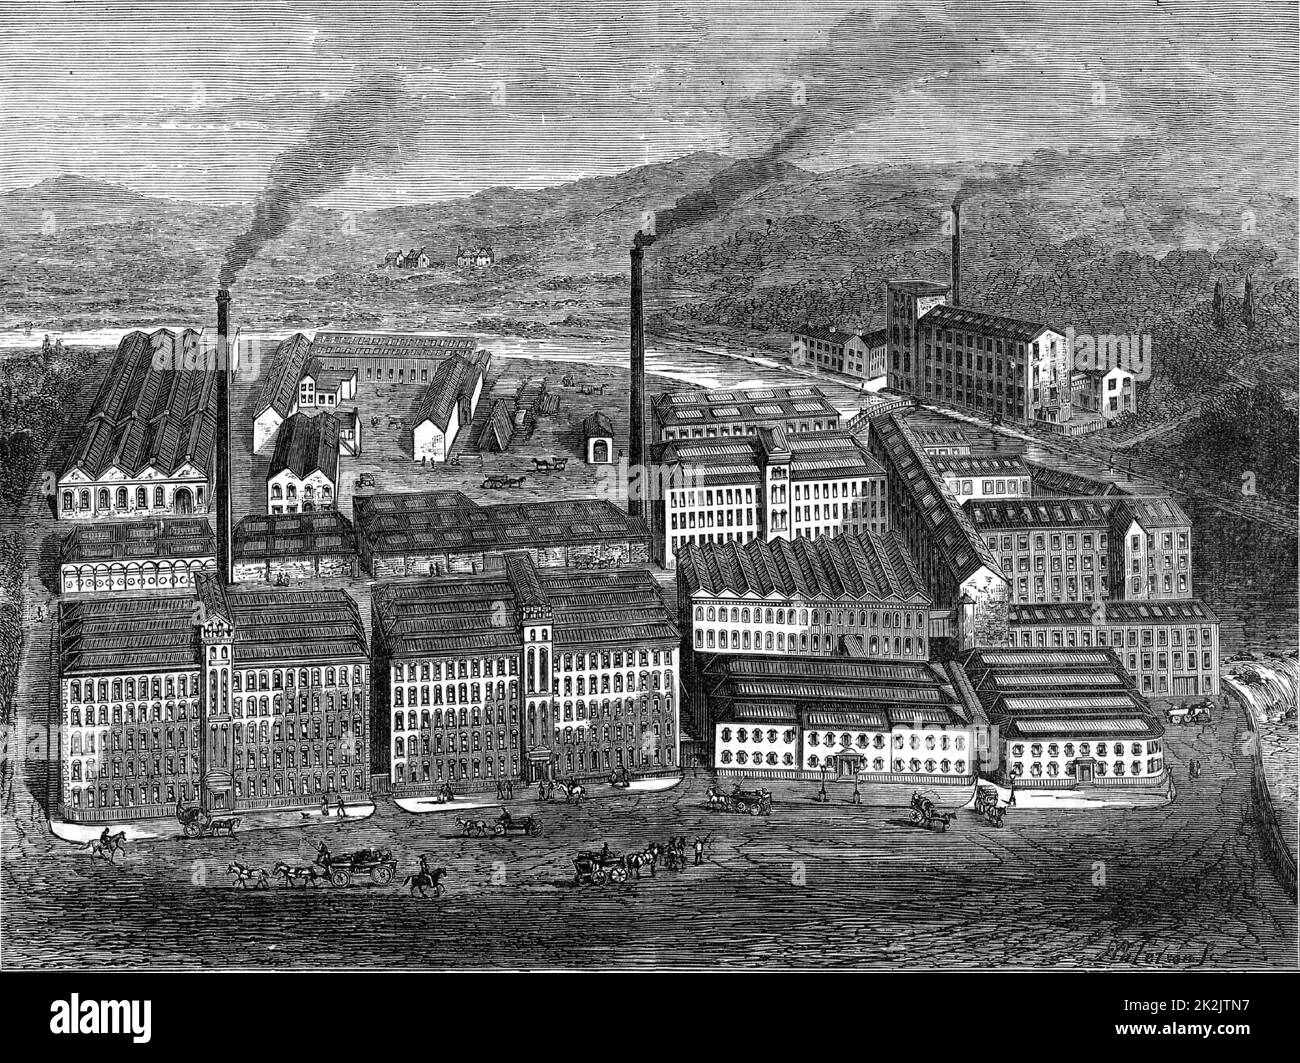 J & J Clark's Anchor thread Works, Paisley, Renfrewshire, Scozia. I Clarks erano conosciuti per i loro fili da cucire e cotone mercerizzato per più di un secolo. Da "Great Industries of Great Britain" (Londra, c1880). Incisione. Foto Stock